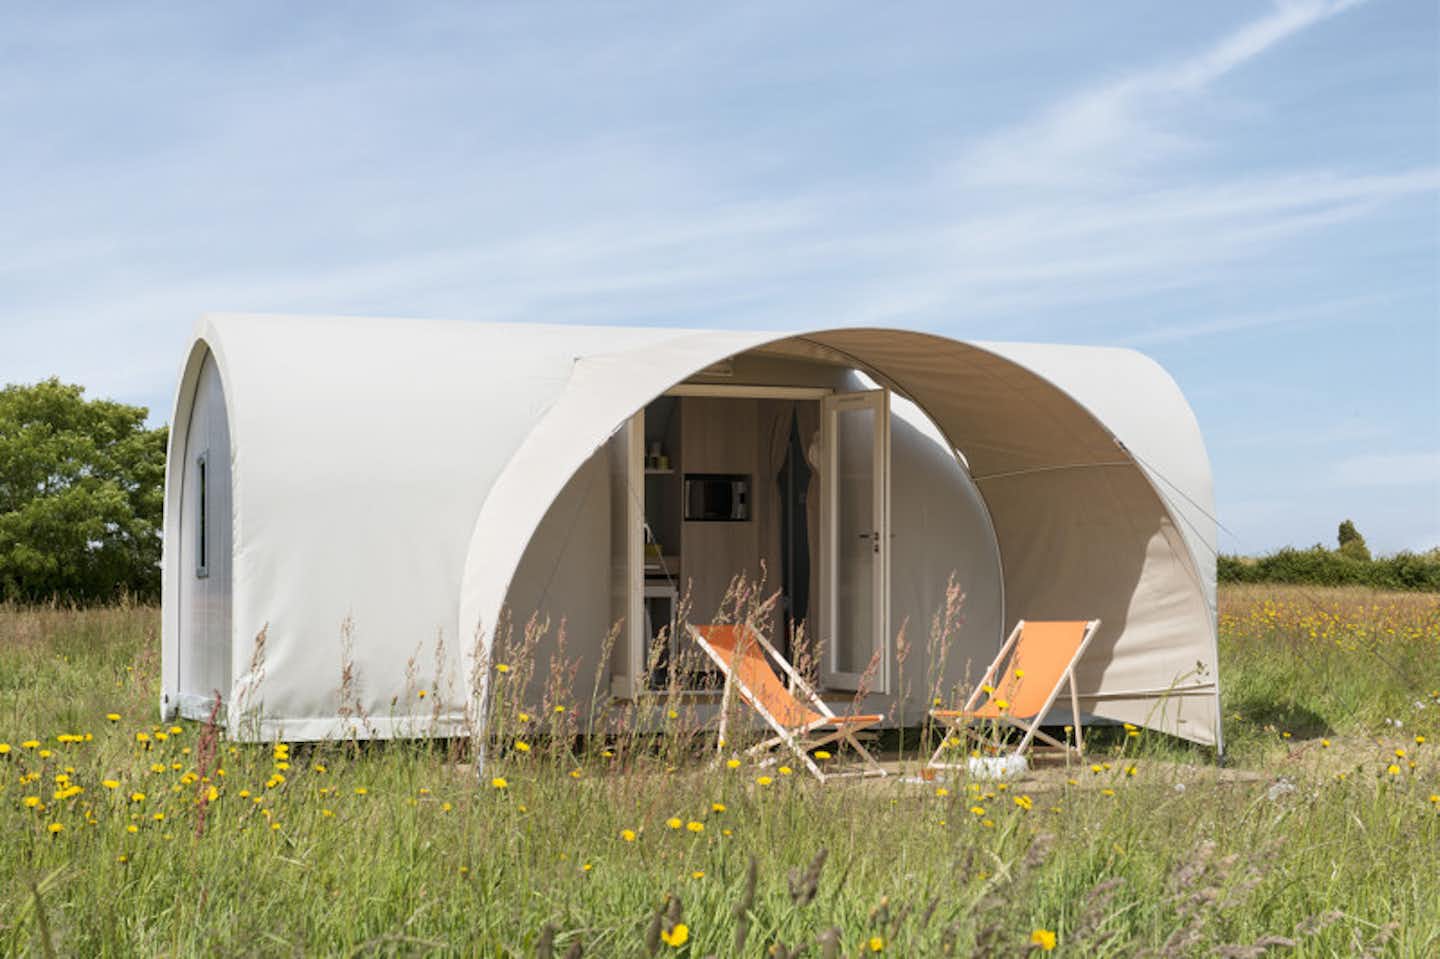 Camping de l' Arquebuse - Mobilheim vom Campingplatz mit Veranda und Liegestühlen auf einer Blumenwiese